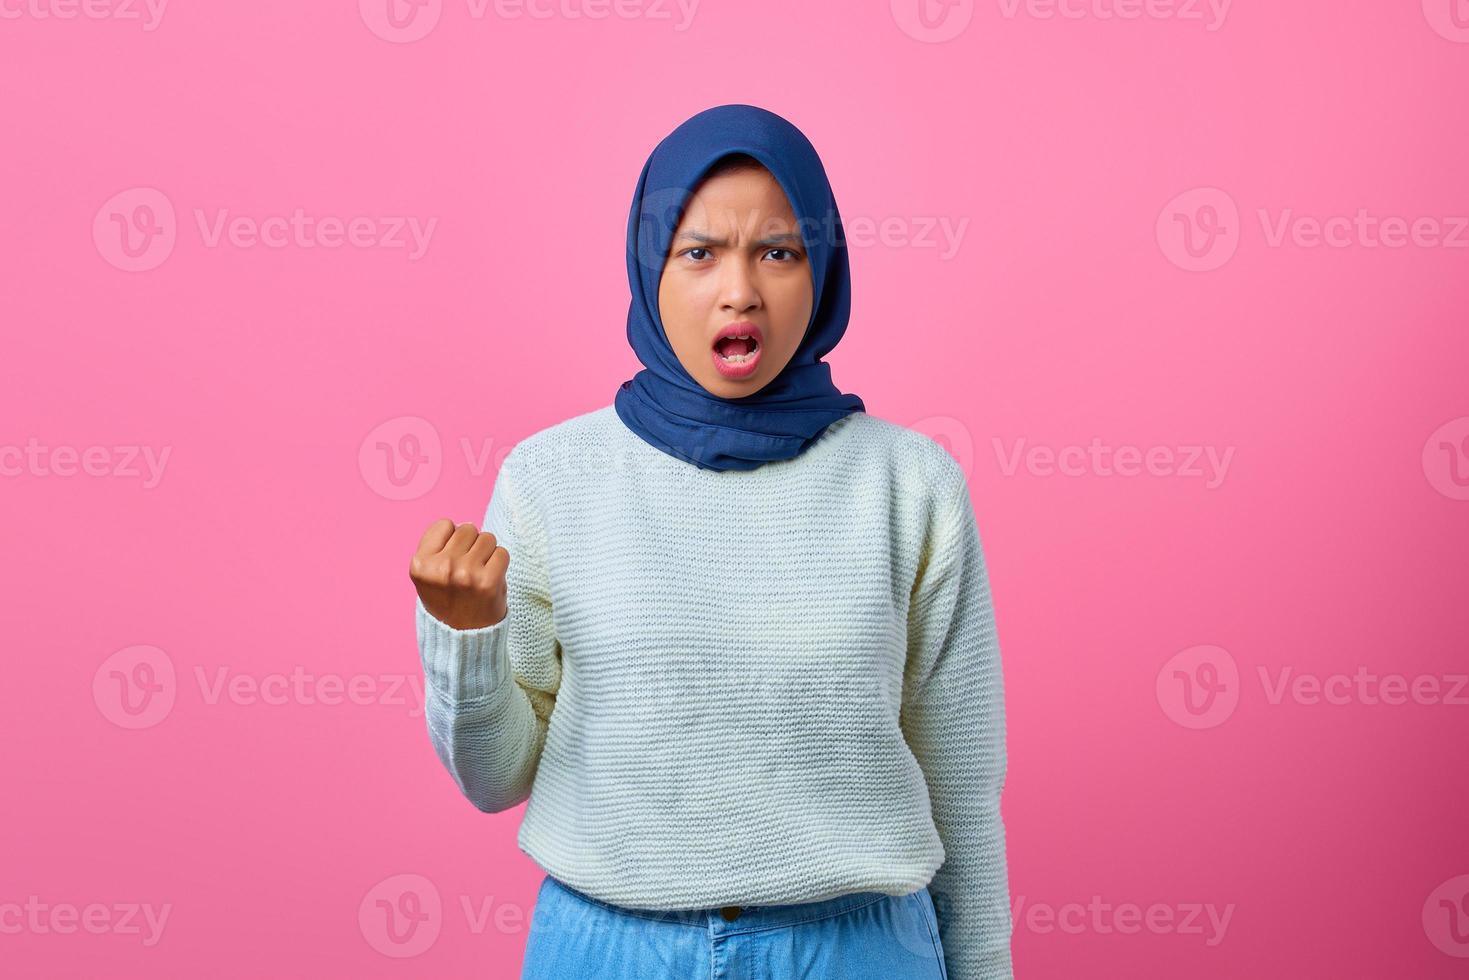 Retrato de hermosa mujer asiática con la mano levantada con expresión enojada foto